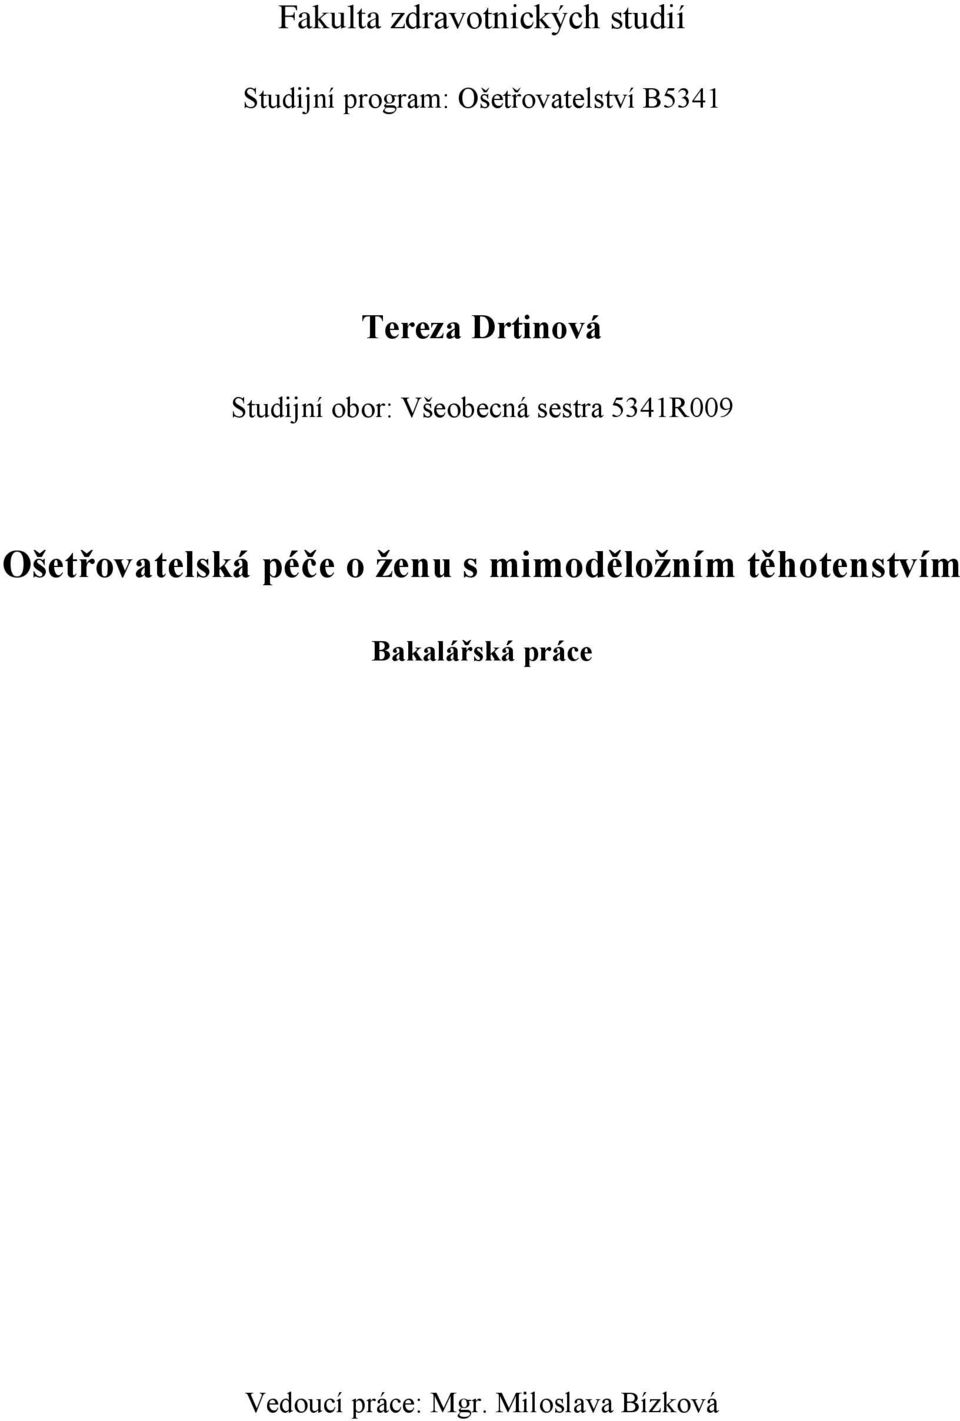 Bakalářská práce 2014 Tereza Drtinová - PDF Stažení zdarma